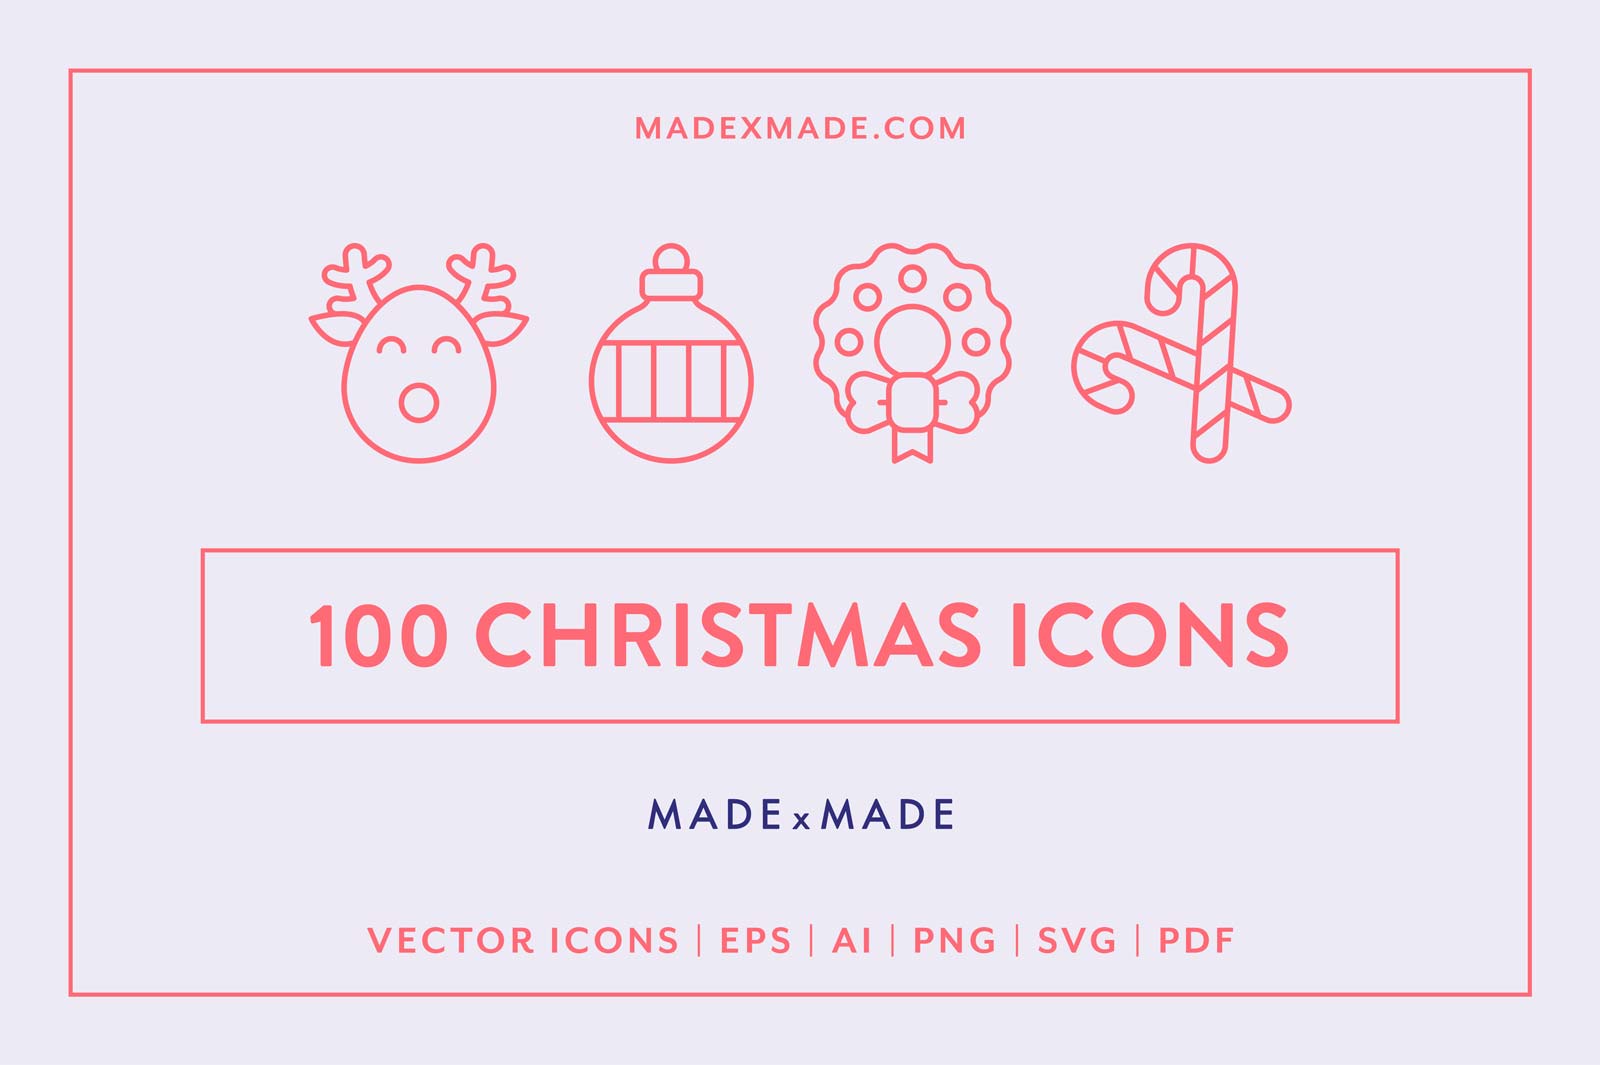 made x made icons christmas